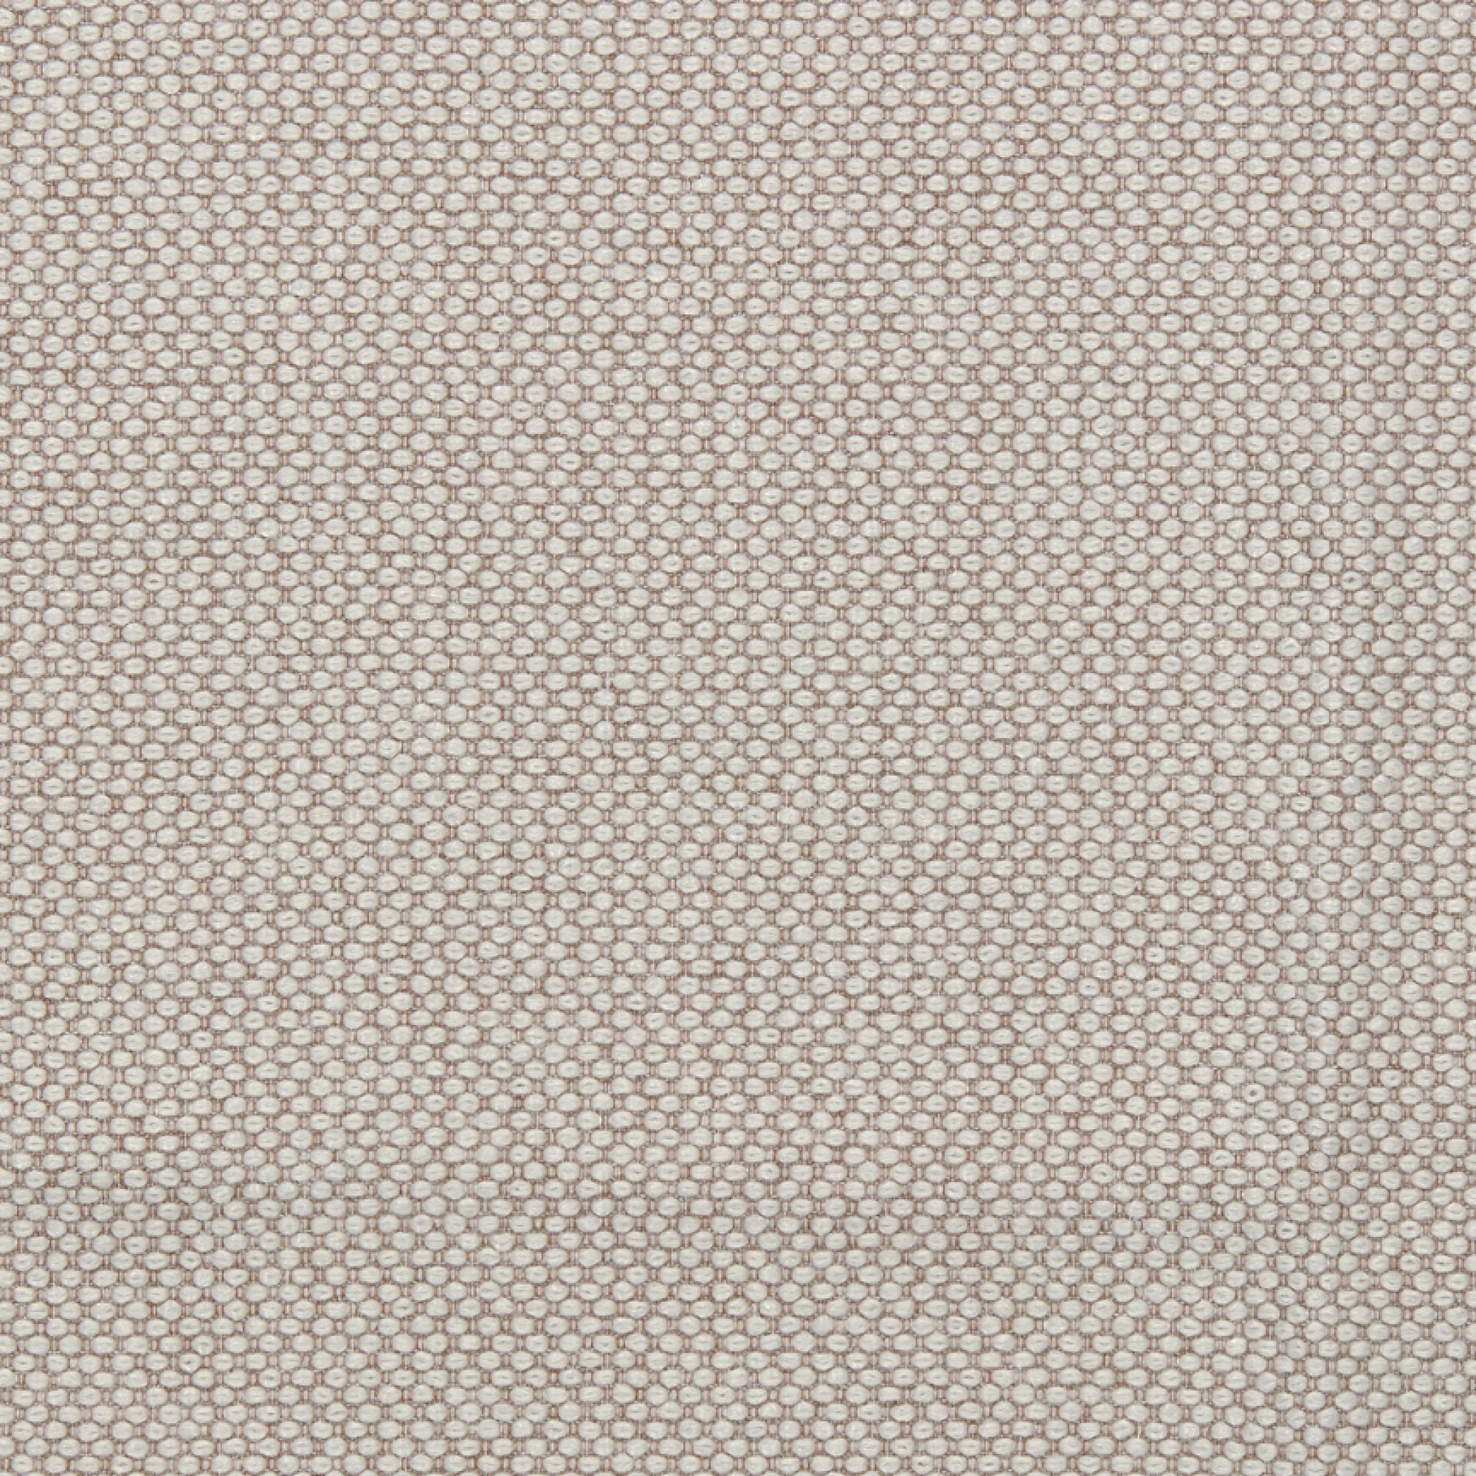 Fabric sample Merit 0029 brown